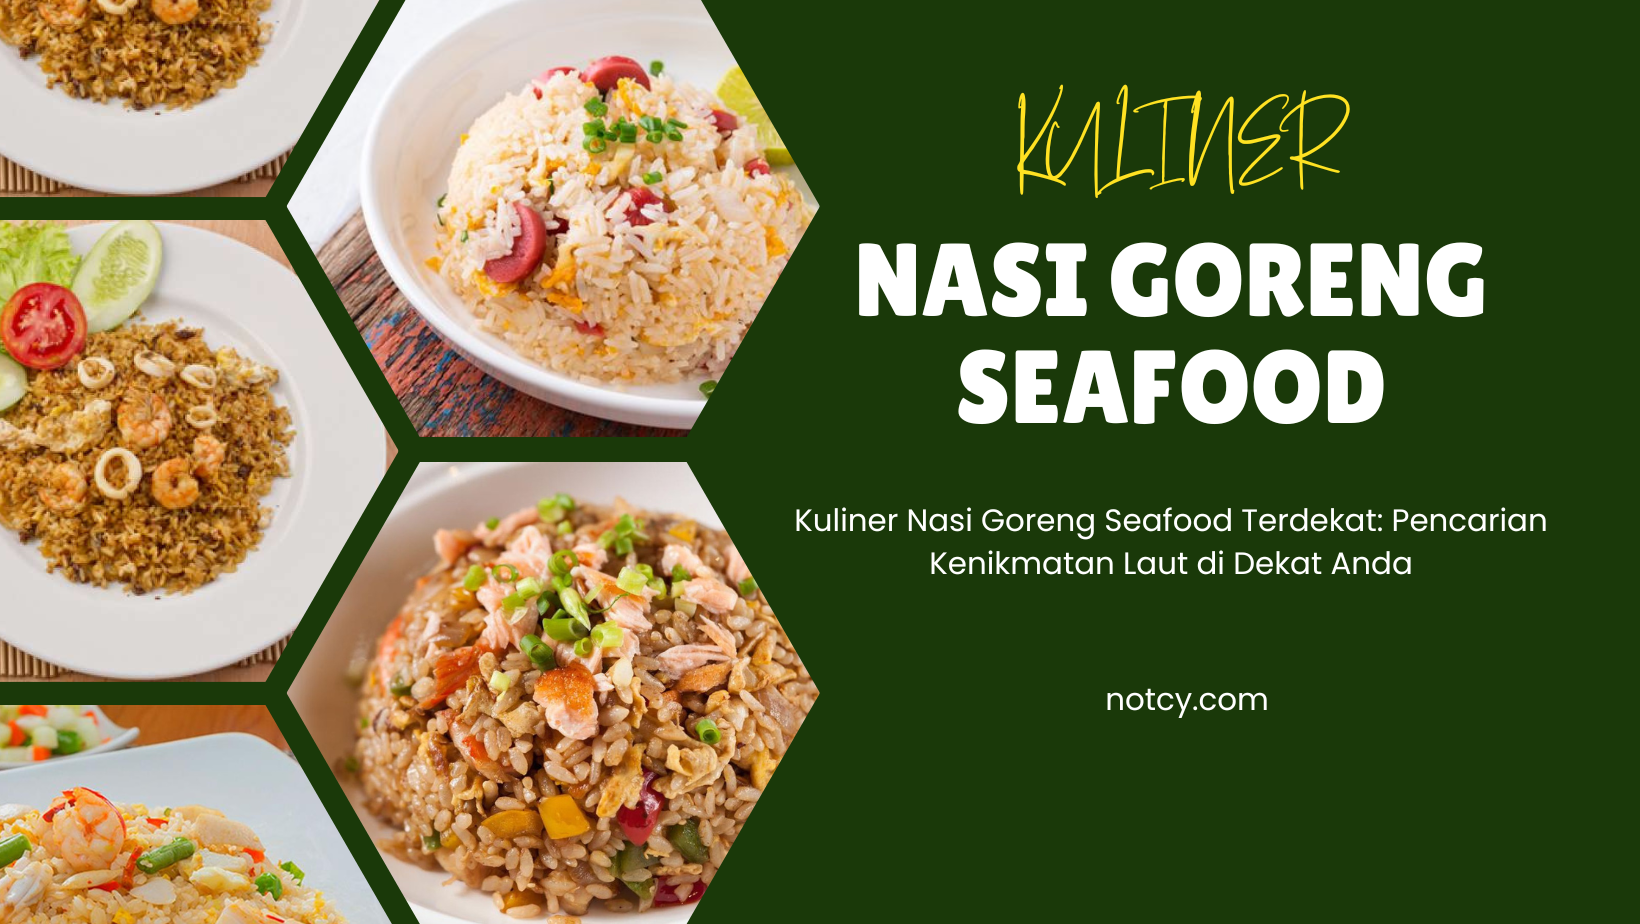 Kuliner Nasi Goreng Seafood Terdekat: Pencarian Kenikmatan Laut di Dekat Anda